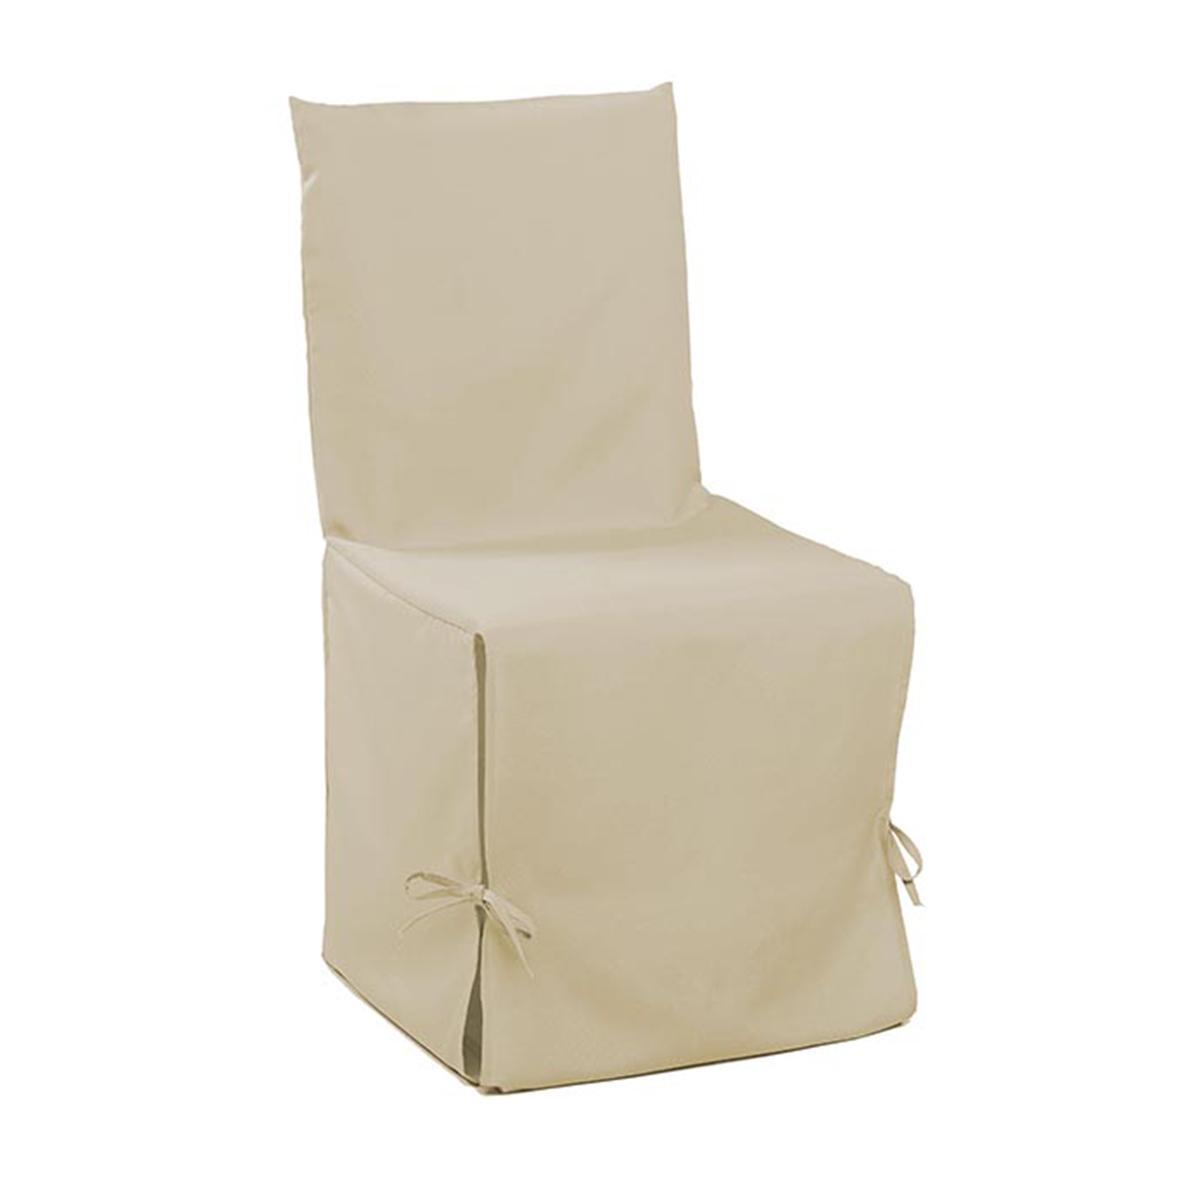 Housse de chaise - 50 x 50 x H 50 cm - Beige